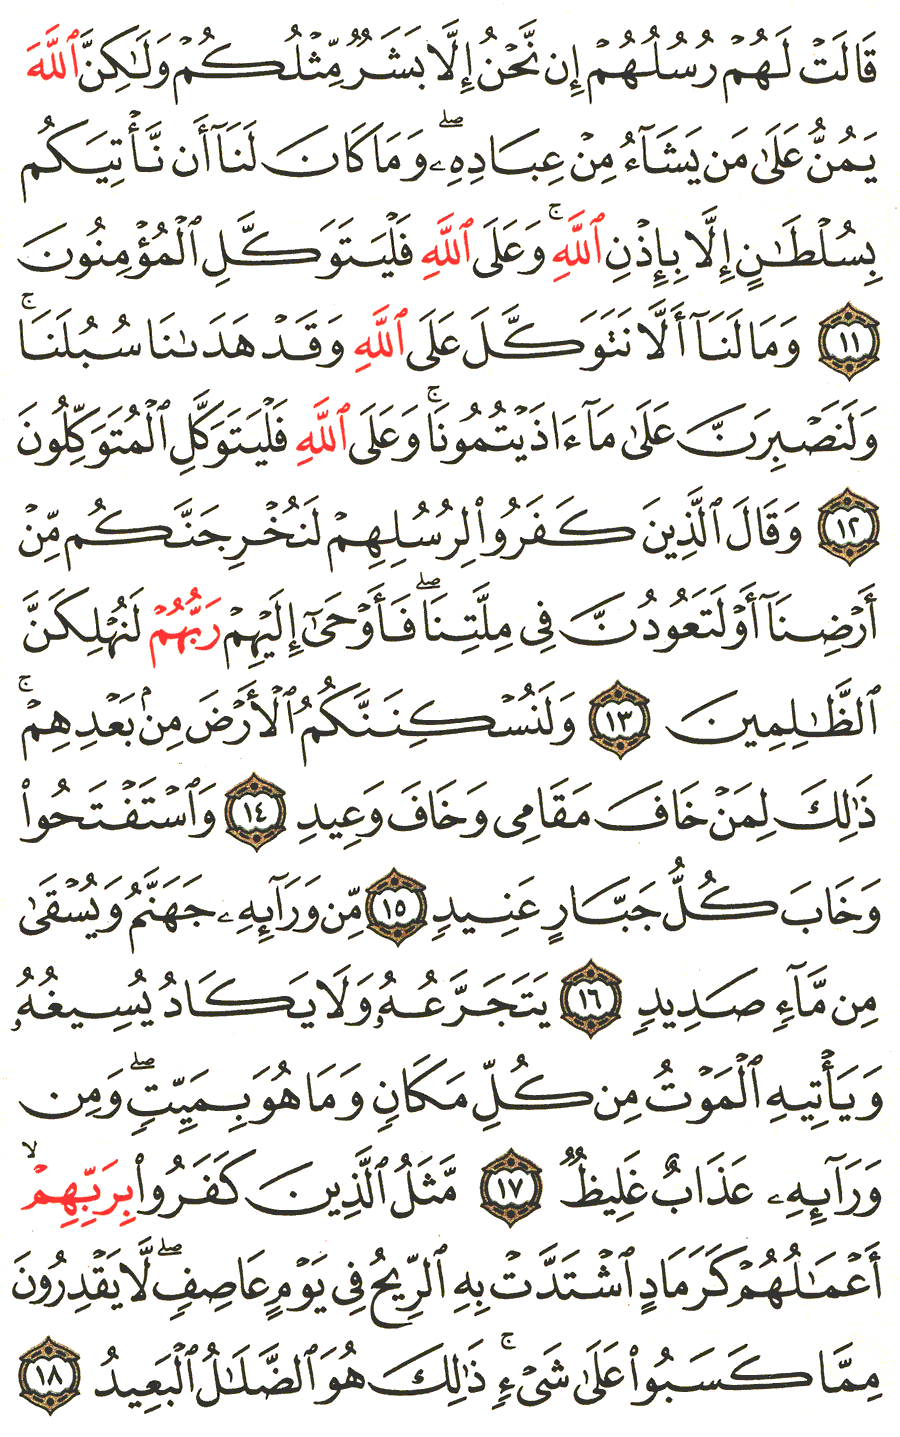 الصفحة رقم 257  من القرآن الكريم مكتوبة من المصحف